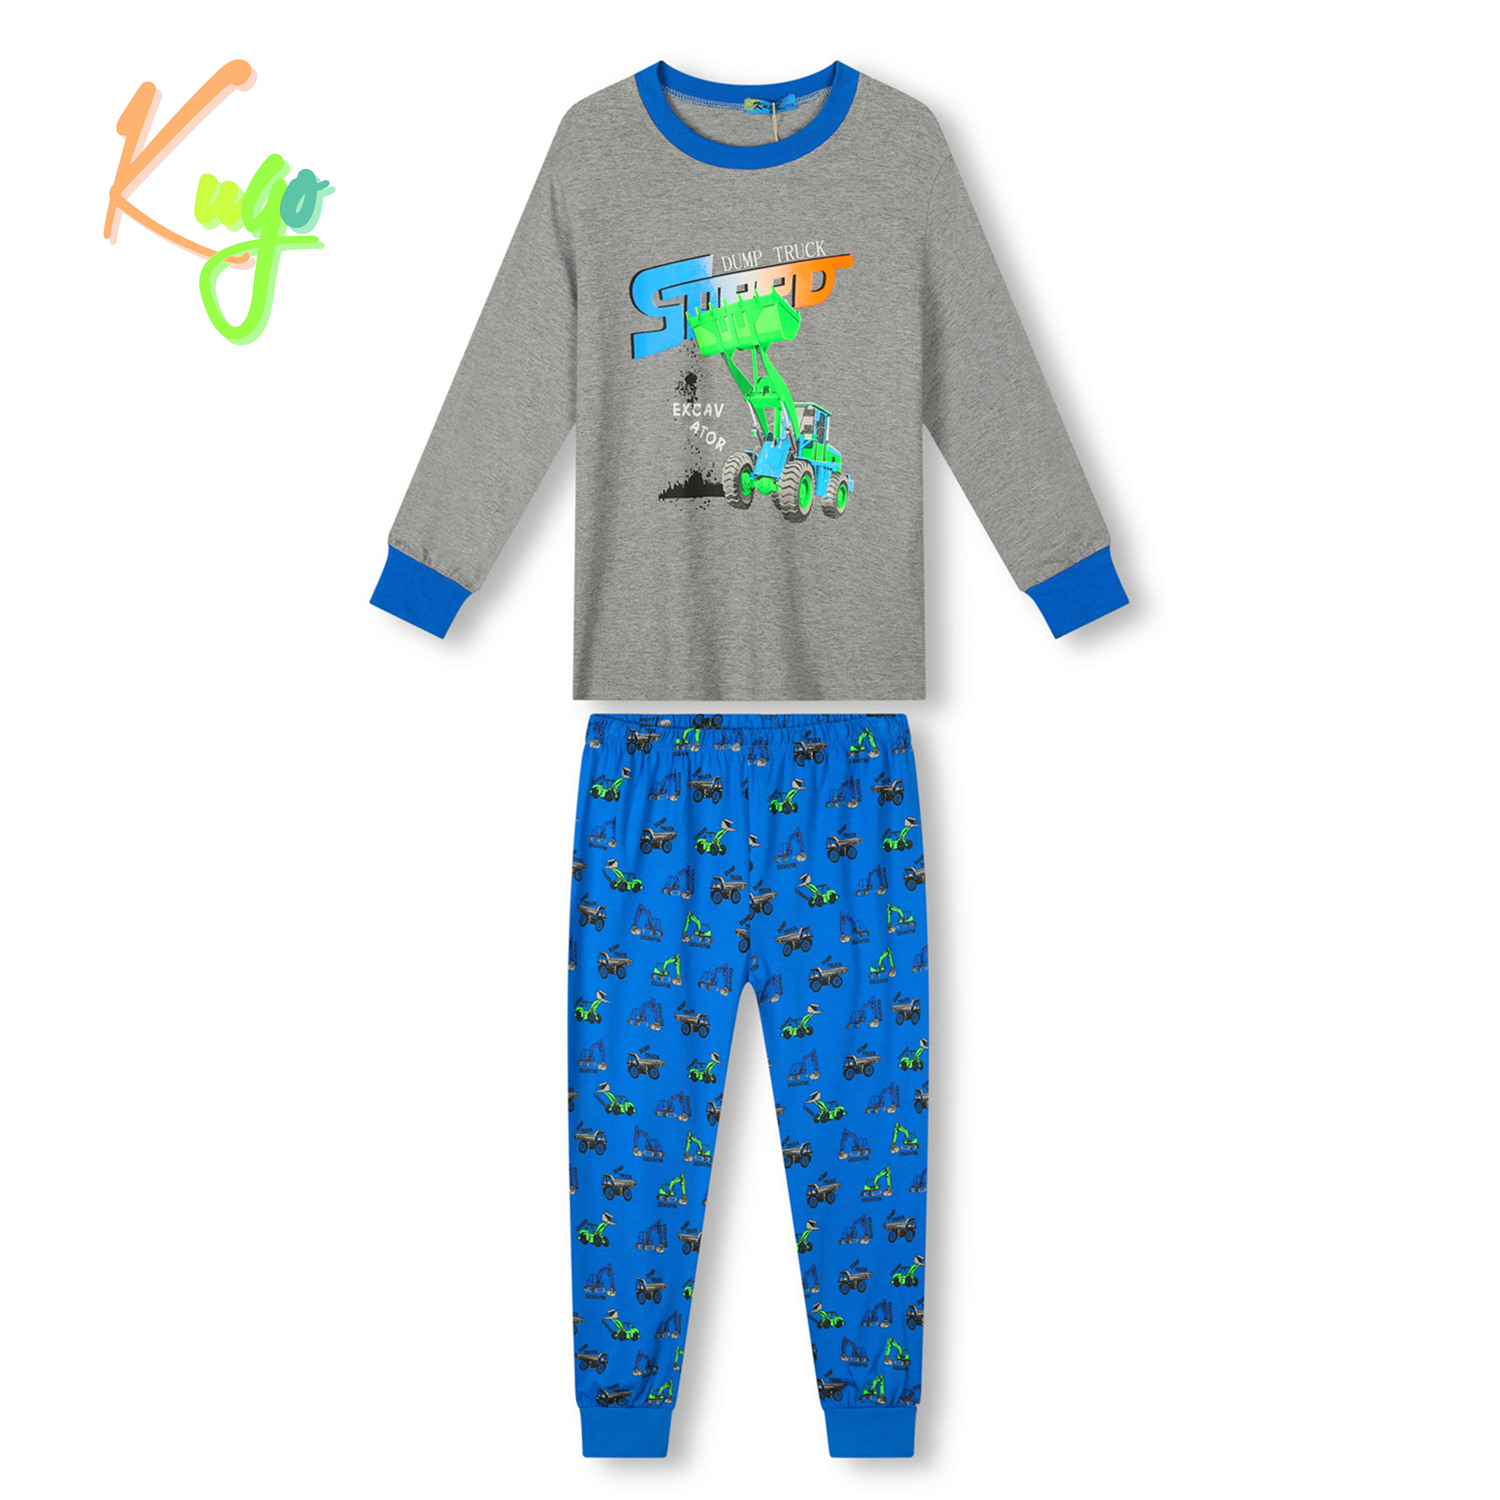 Chlapecké pyžamo - KUGO MP3778, šedá / modrá Barva: Šedá, Velikost: 128